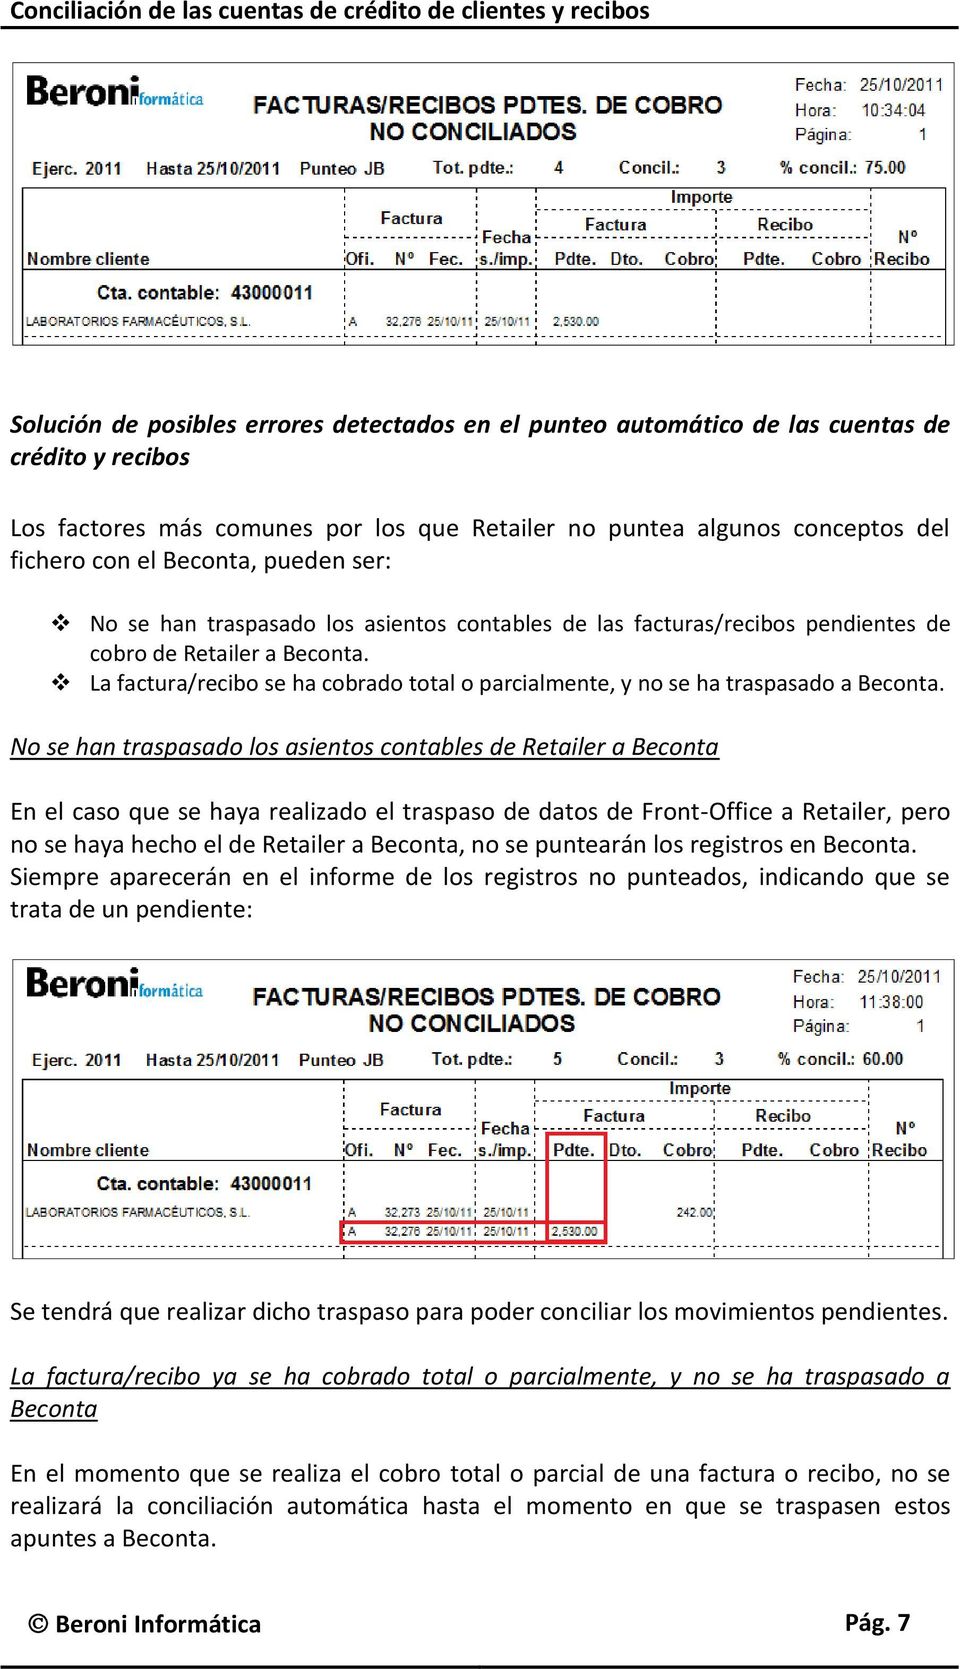 La factura/recibo se ha cobrado total o parcialmente, y no se ha traspasado a Beconta.